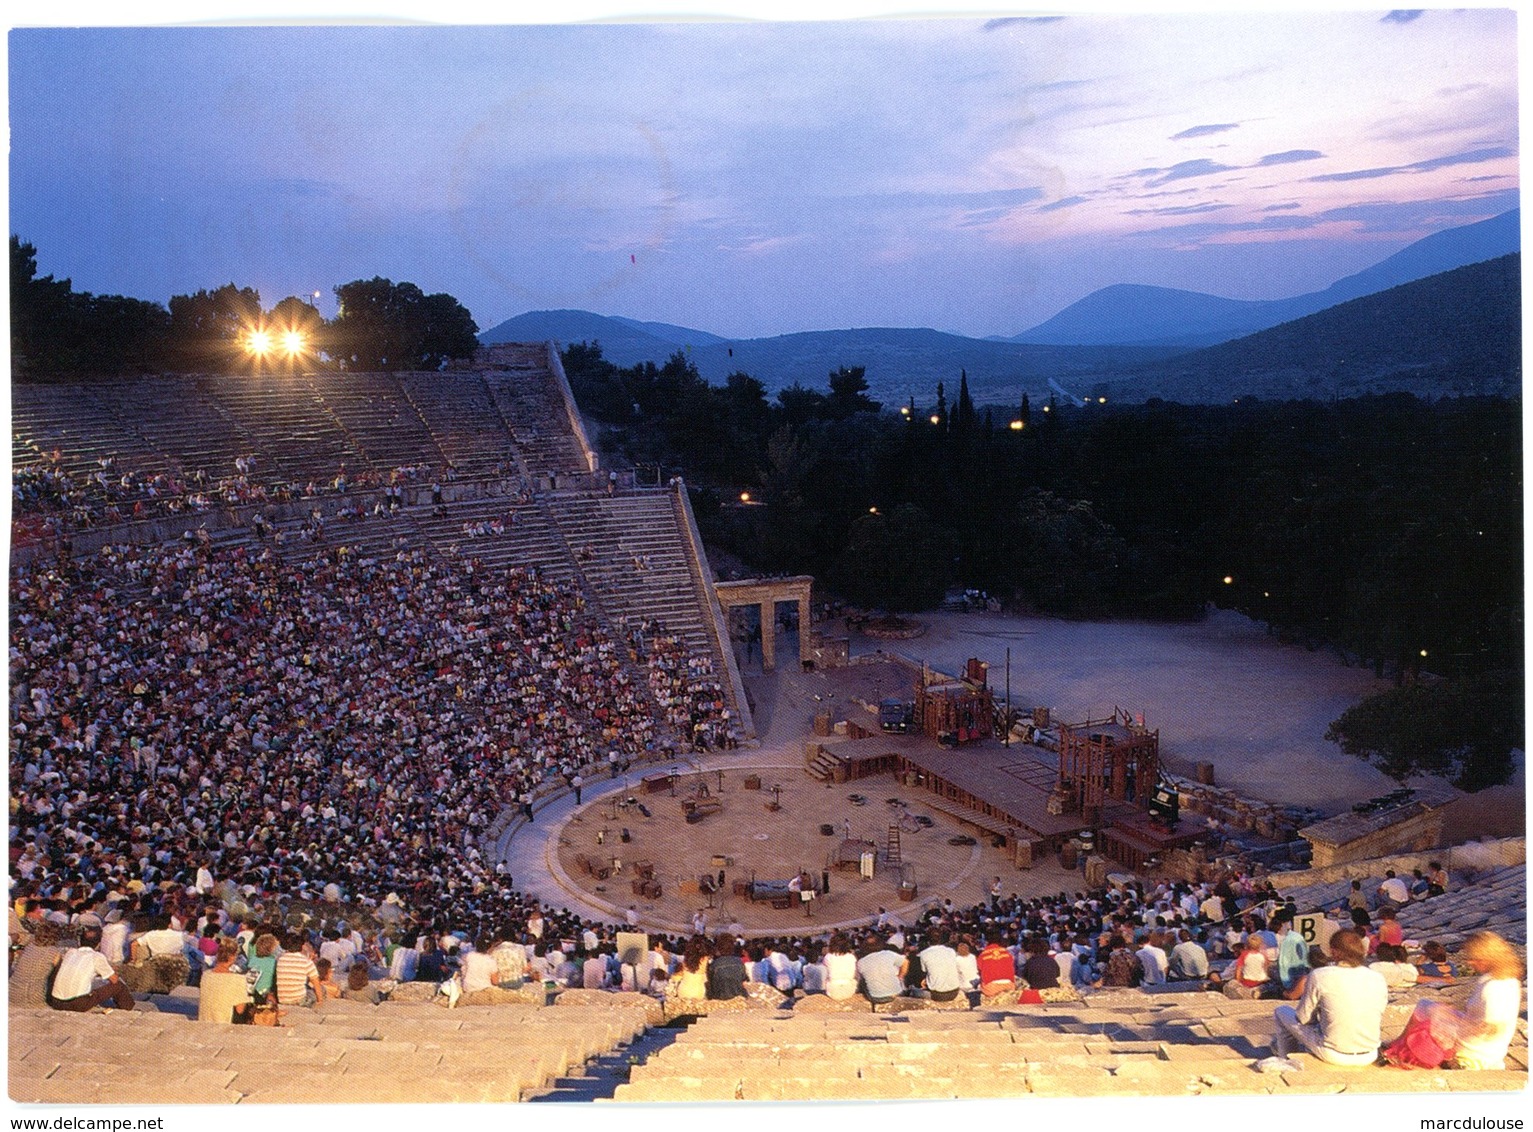 Epidaurus. Asclepieion. The Theatre. Epidaure. Asclépieion. Le Théâtre. Epidauros. Asklepieion. Das Theater. - Griekenland